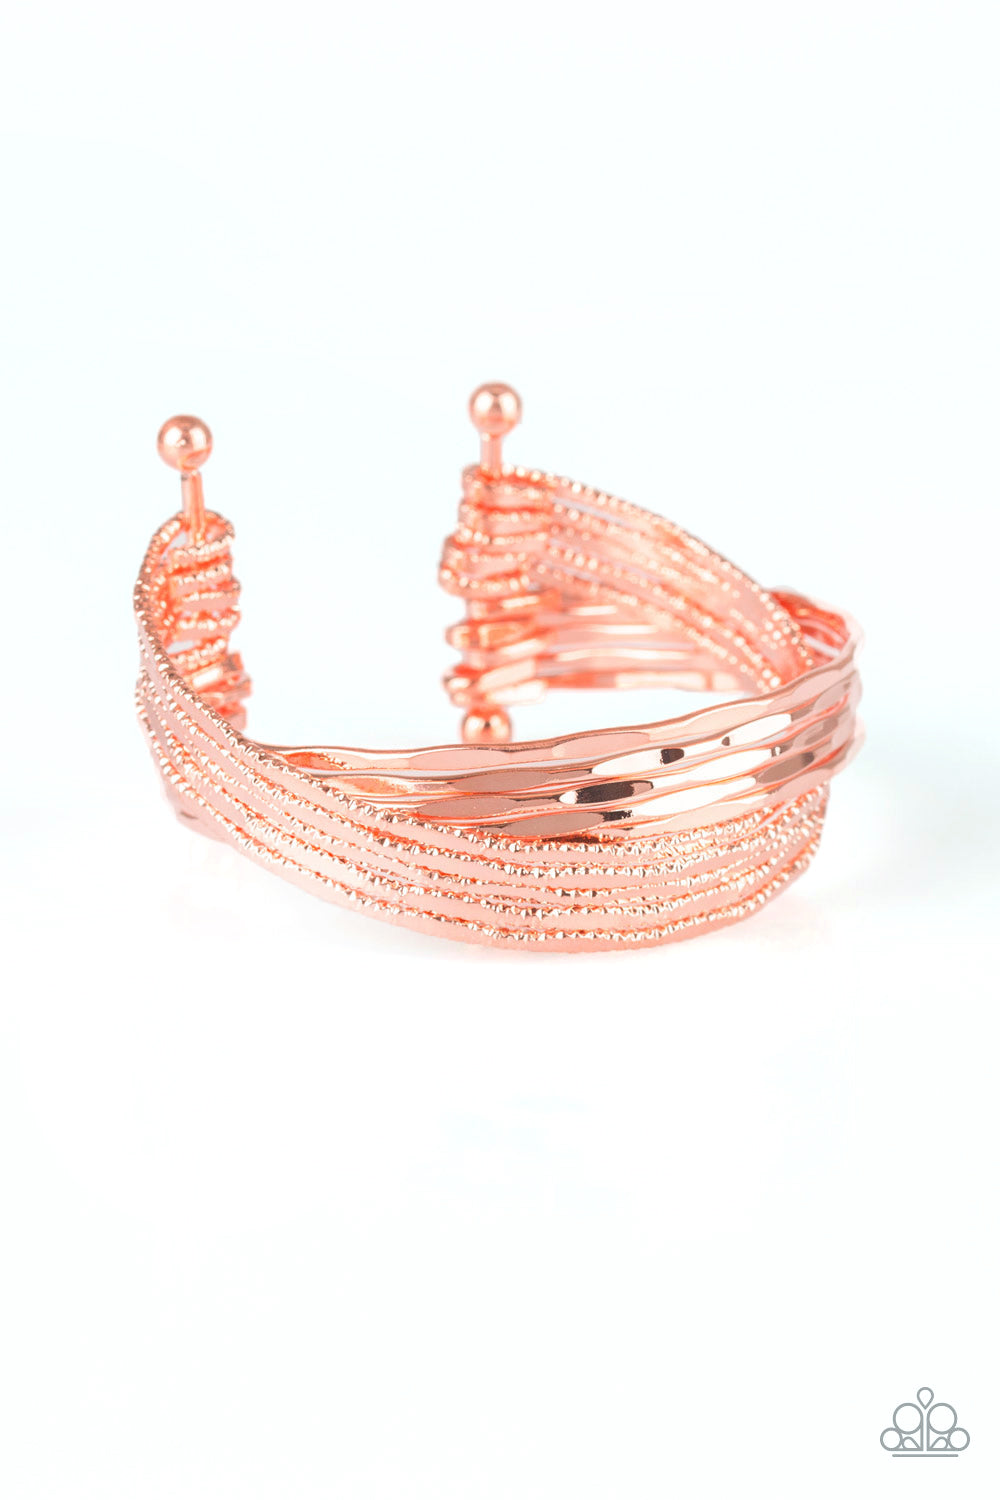 See A Pattern? - Copper Cuff Bracelet